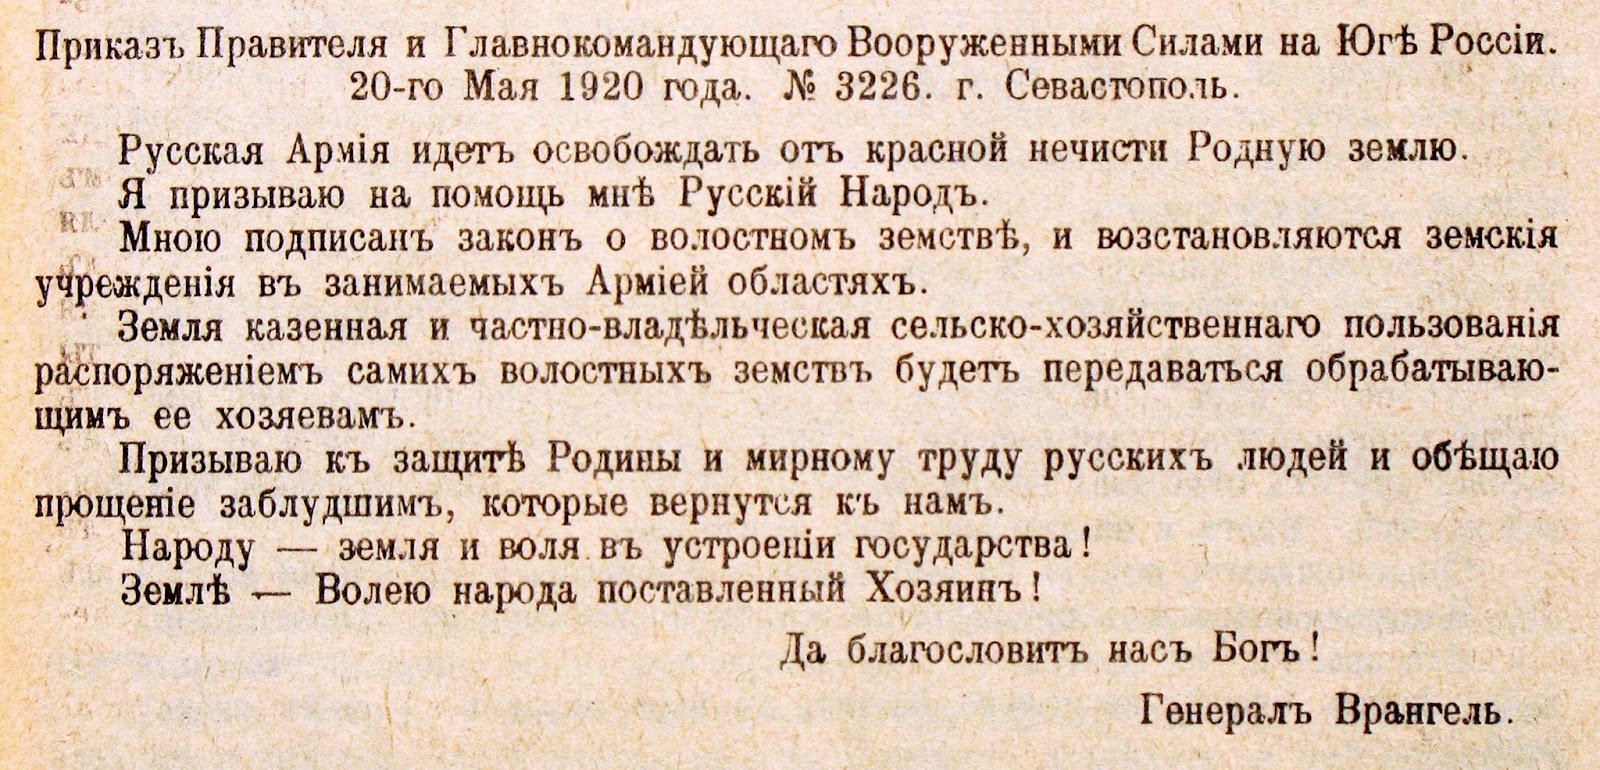 Наказ правителя і головнокомандувача Збройними силами на Півдні Росії П.Врангеля від 2 червня (20 травня) 1920 р. Оприлюднений 7 червня (25 травня)